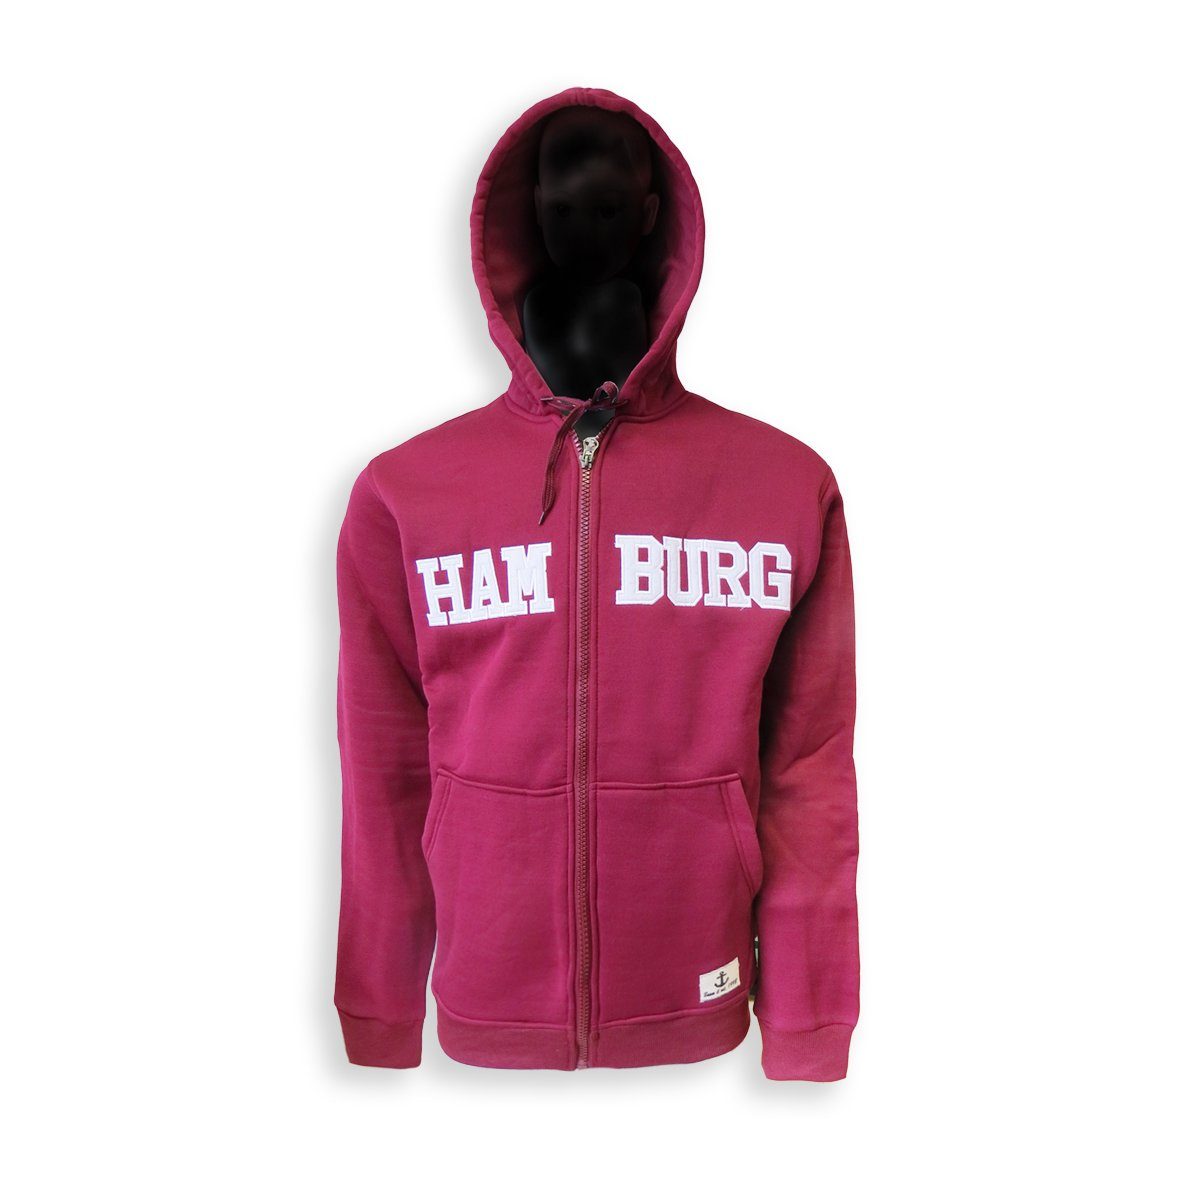 Sonia Originelli T-Shirt Sweatjacke bestickt Hoodie Jacke unifarben Herren bordeaux "Hamburg"